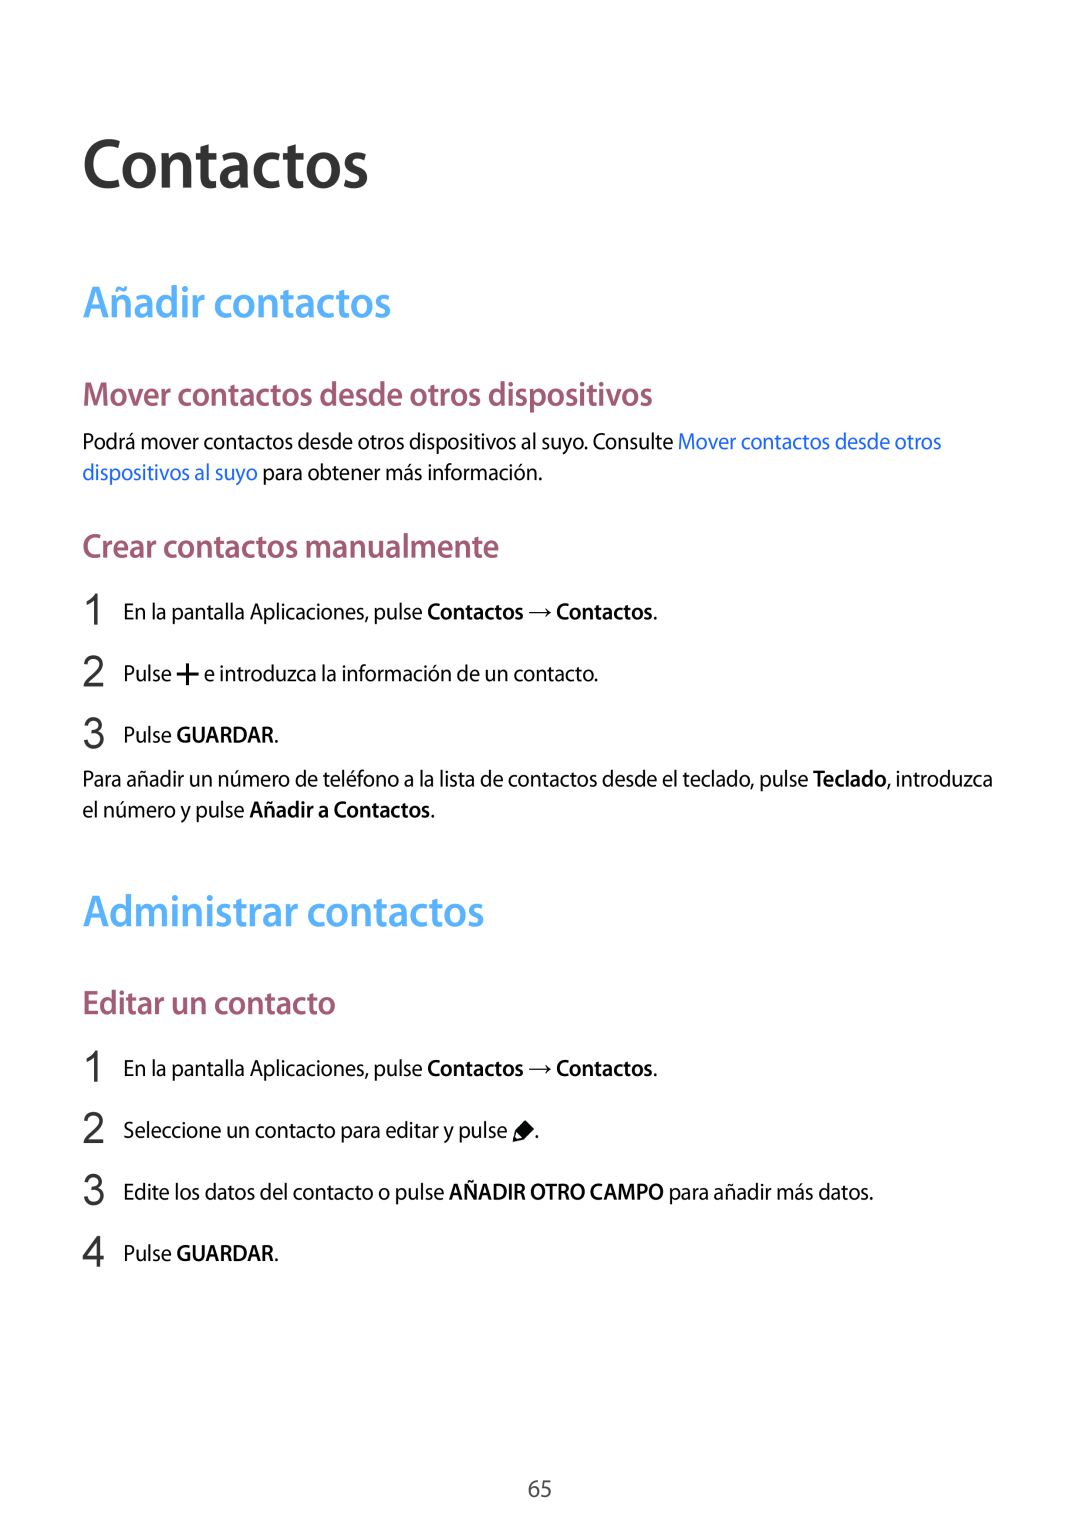 Samsung SM-G900FZDAXEF manual Contactos, Añadir contactos, Administrar contactos, Mover contactos desde otros dispositivos 